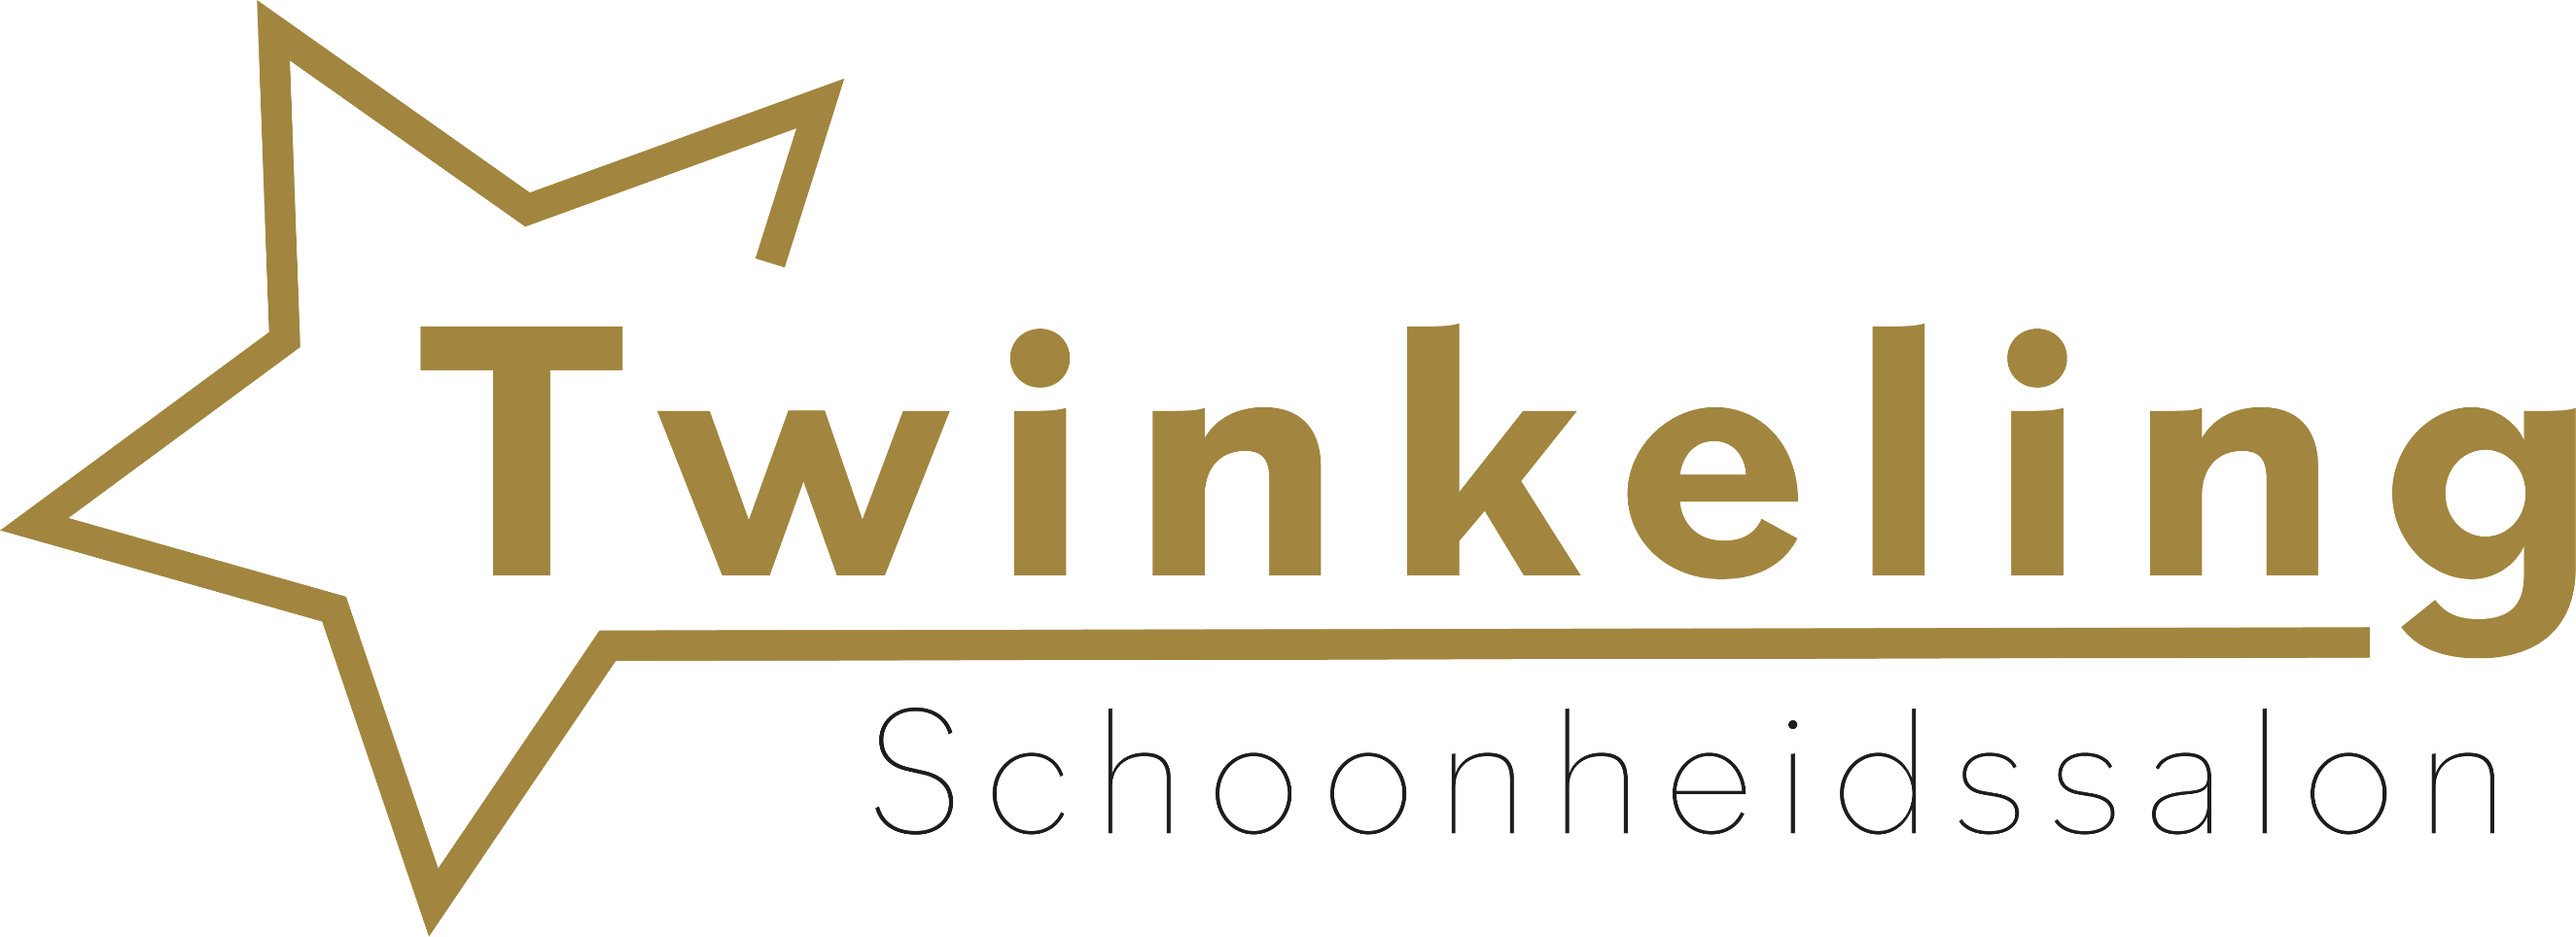 twinkeling.eu logo